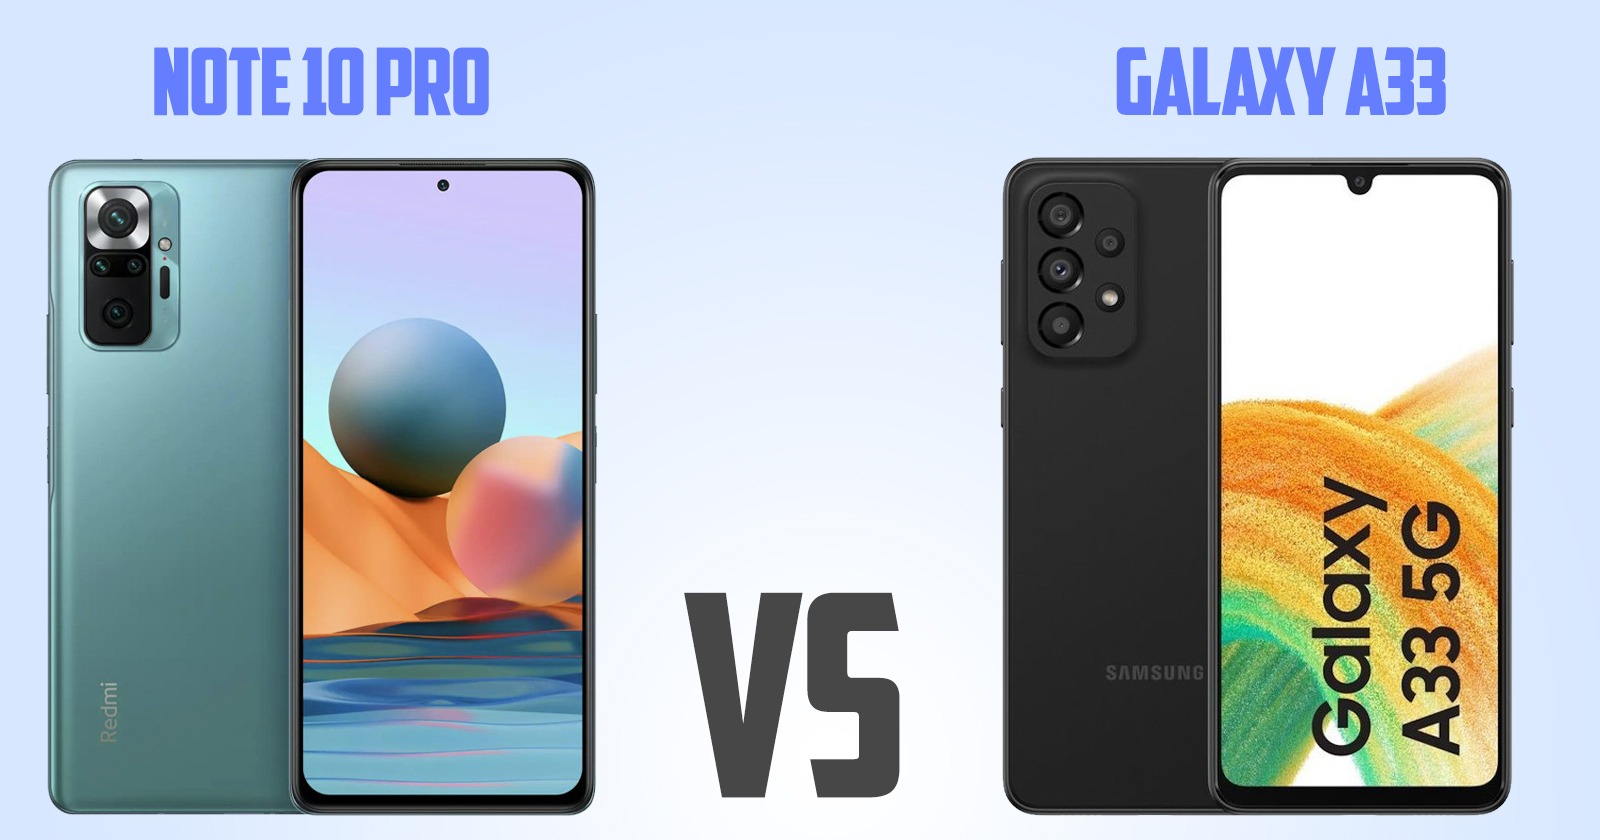 Redmi note 10 pro vs Samsung Galaxy A33